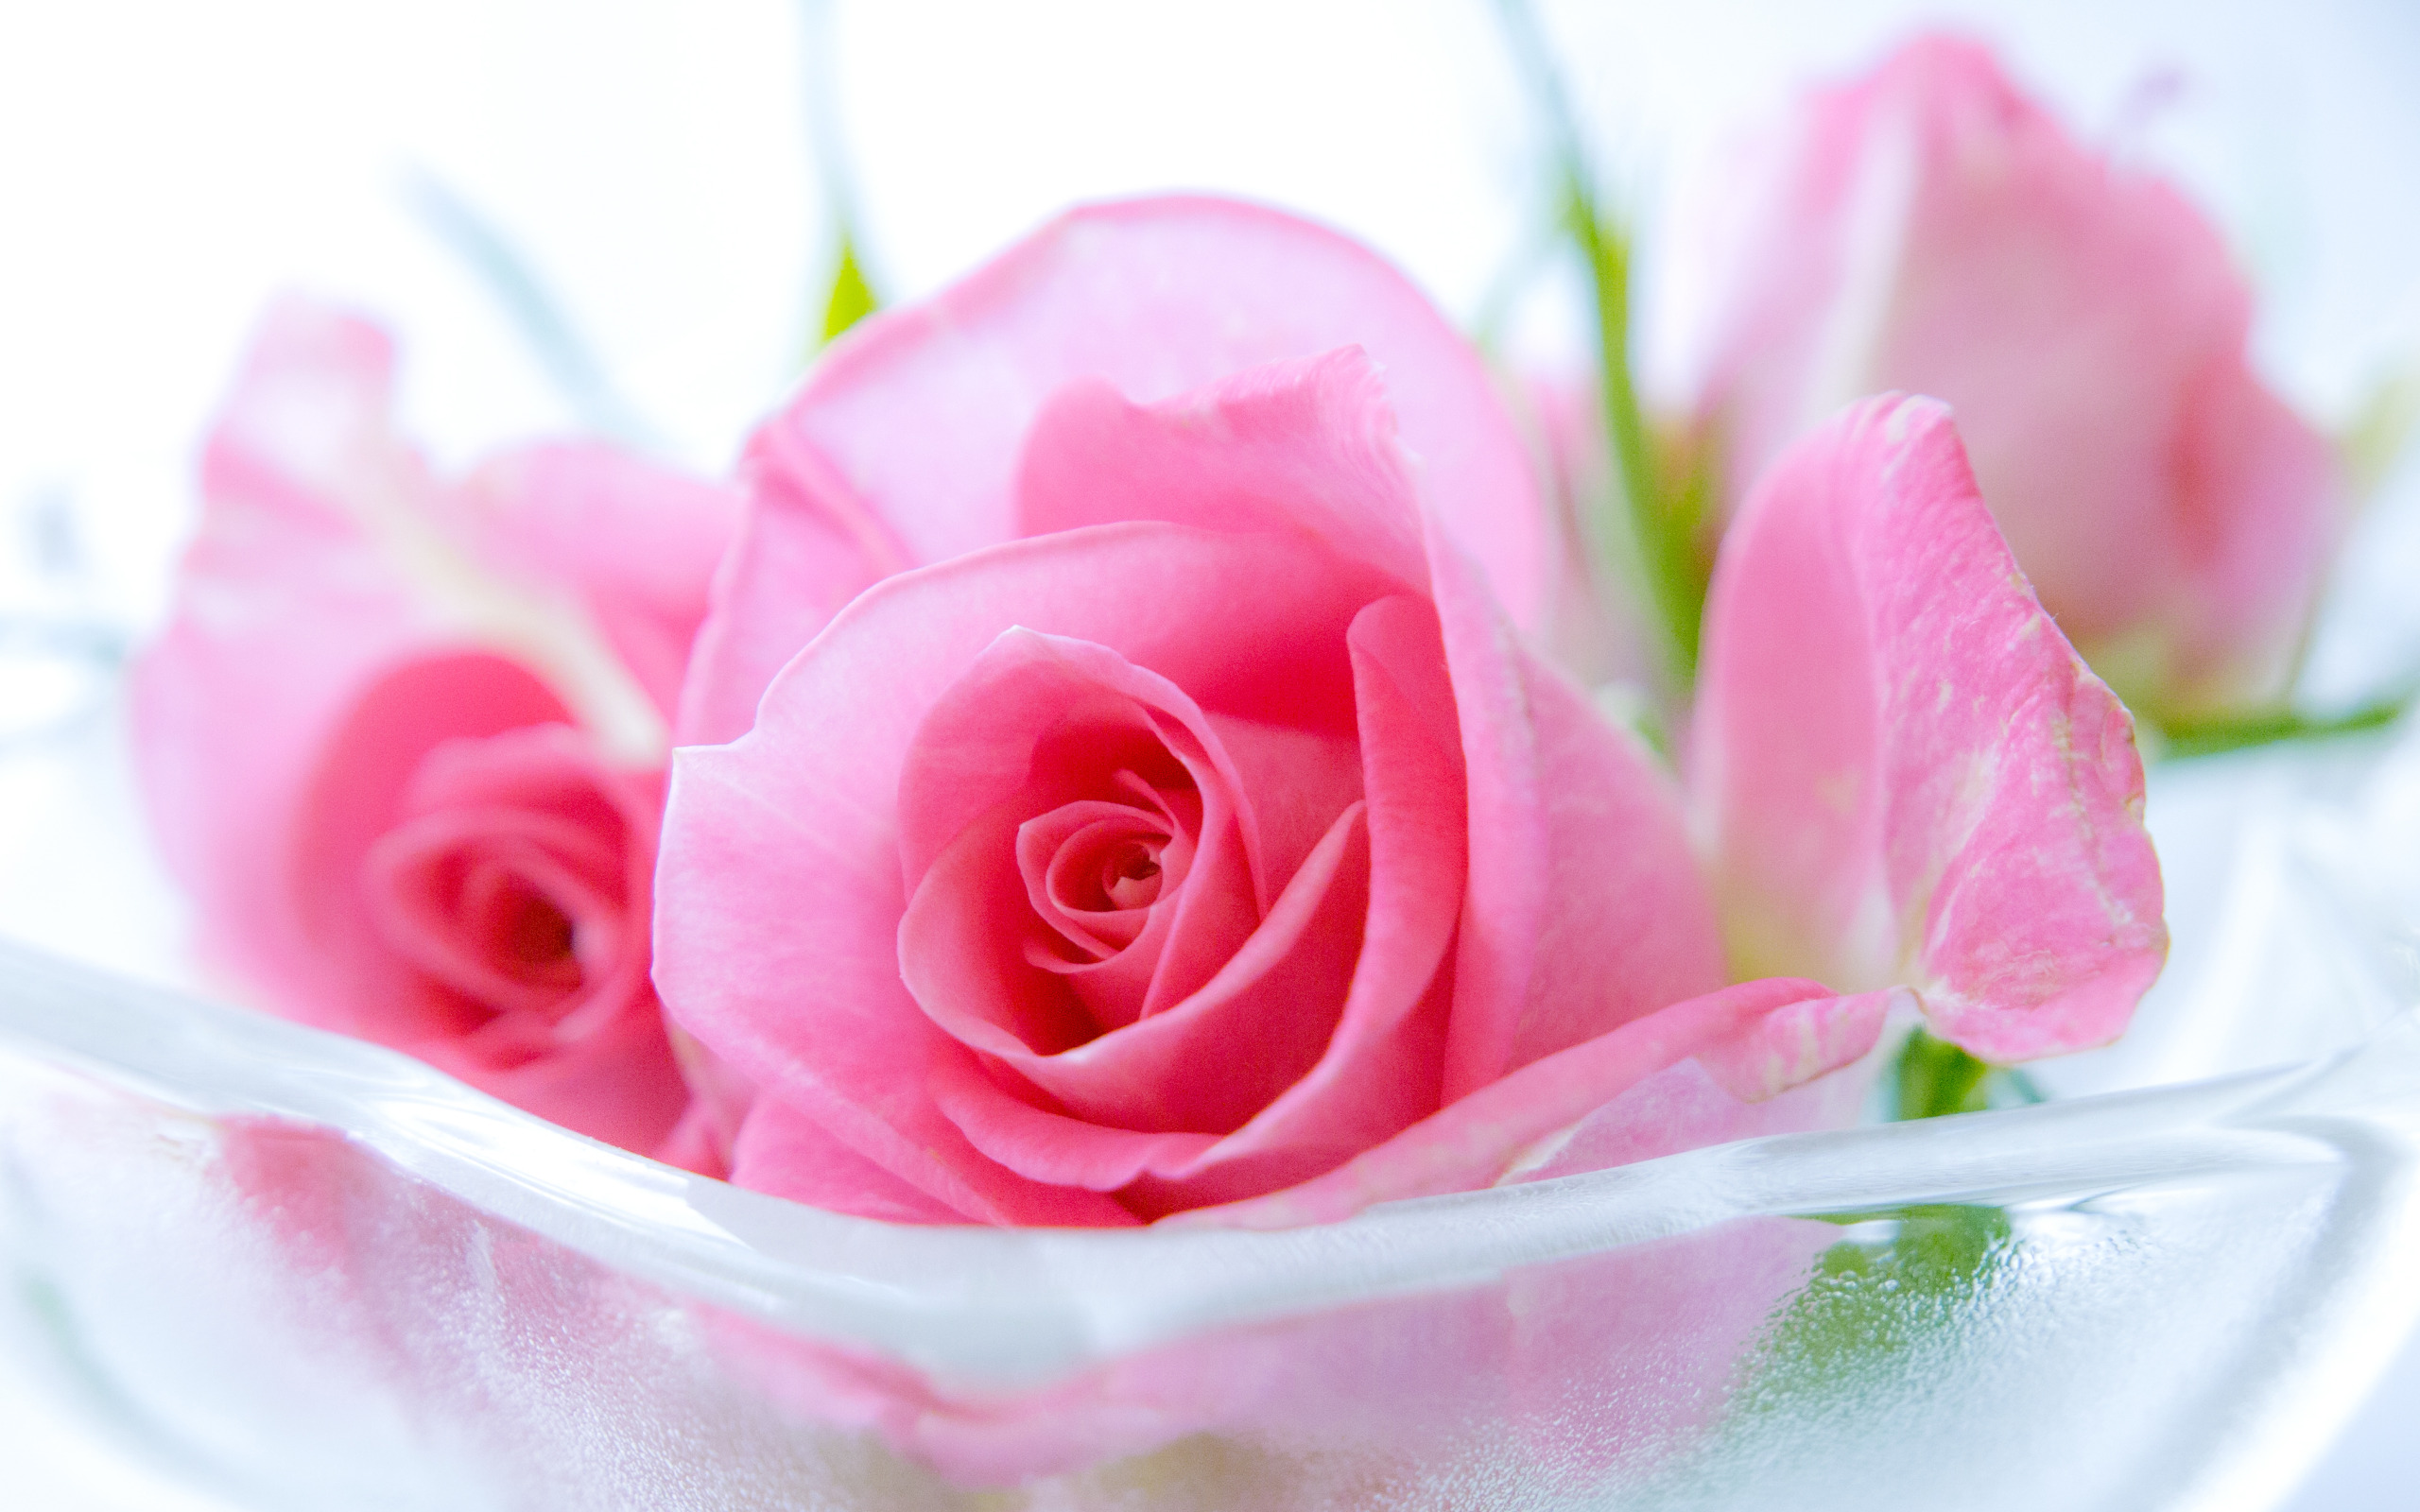 Pink Roses Widescreen - Wallpaper, High Definition, High ...